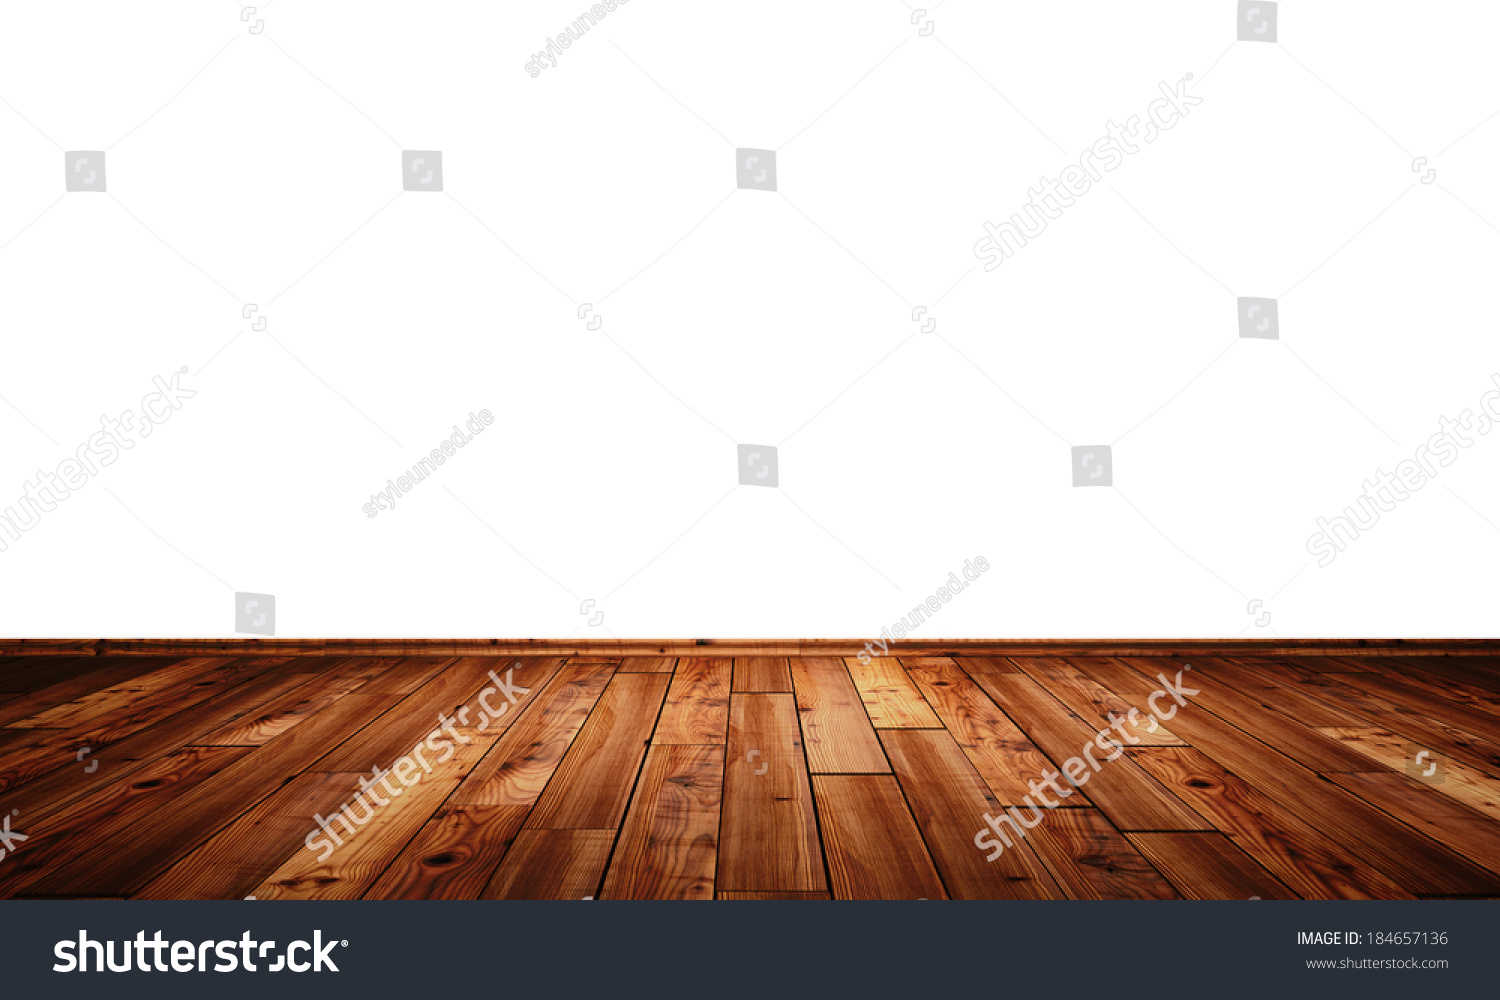 木の床の背景2 のイラスト素材